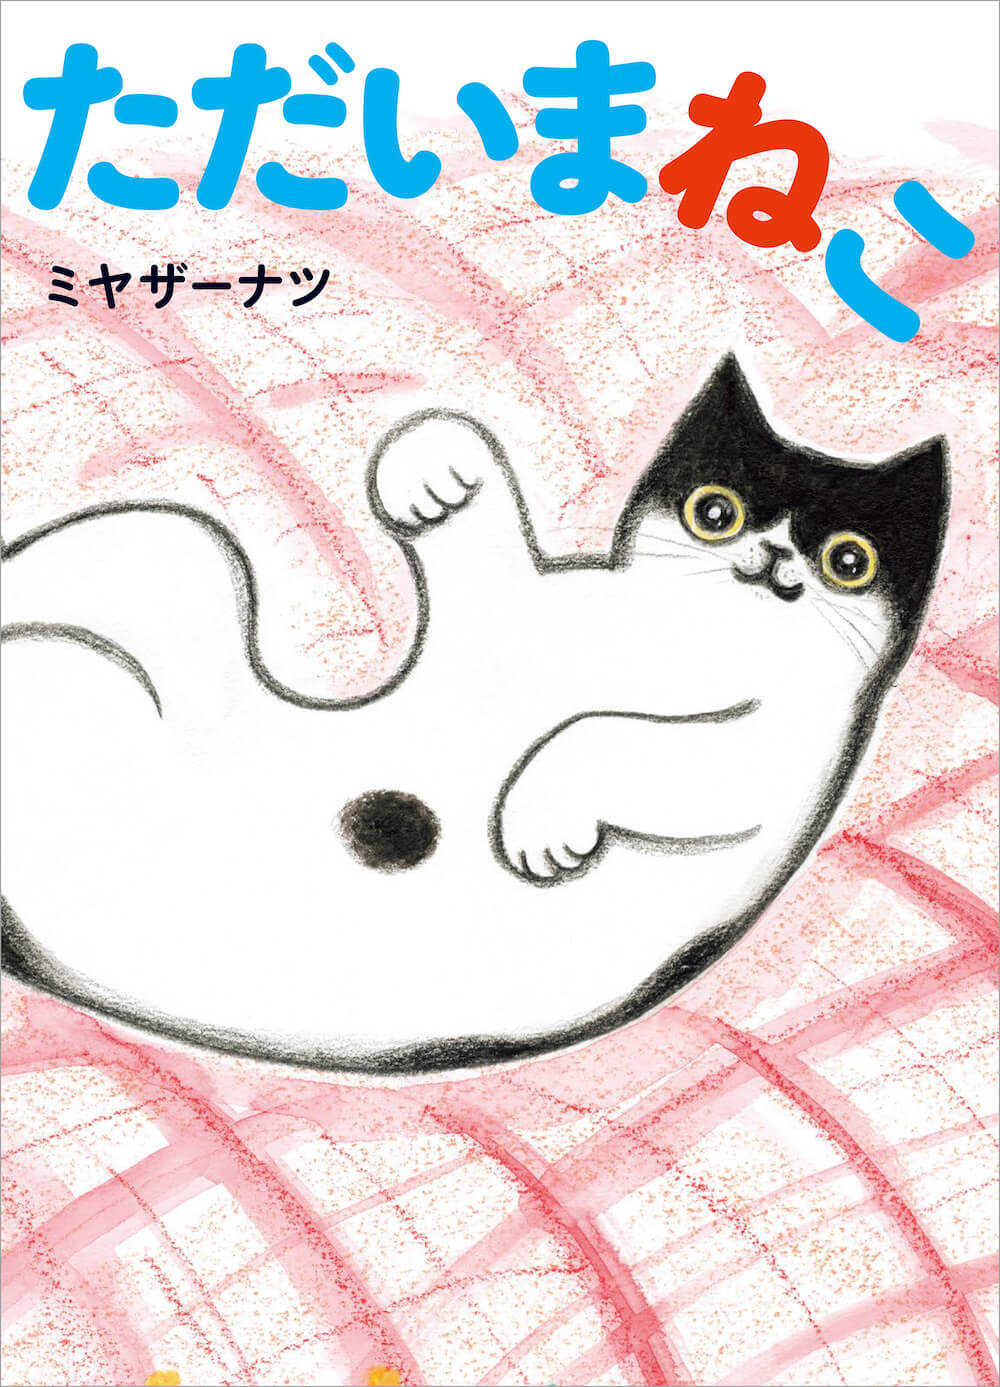 死んだ猫と再開する感動ストーリーの絵本『ただいまねこ』表紙イメージ